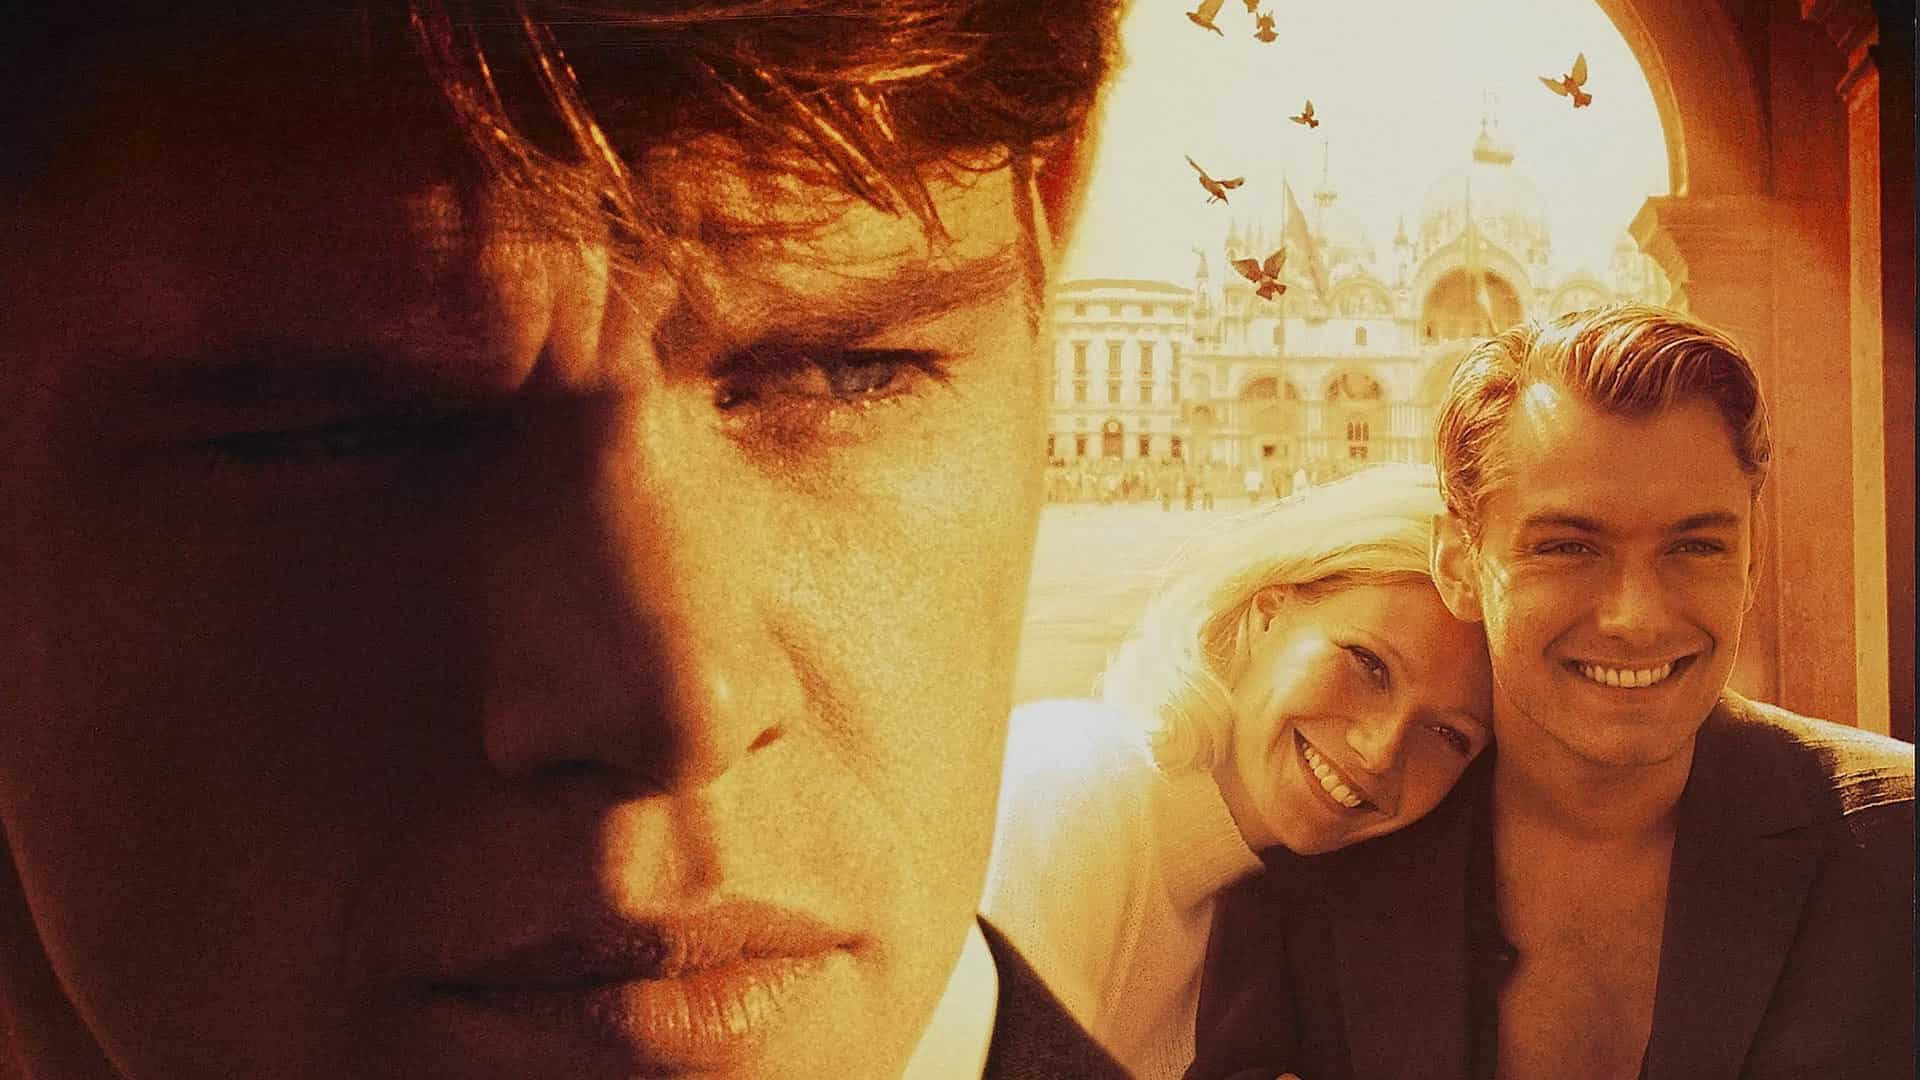 دانلود فیلم The Talented Mr. Ripley 1999